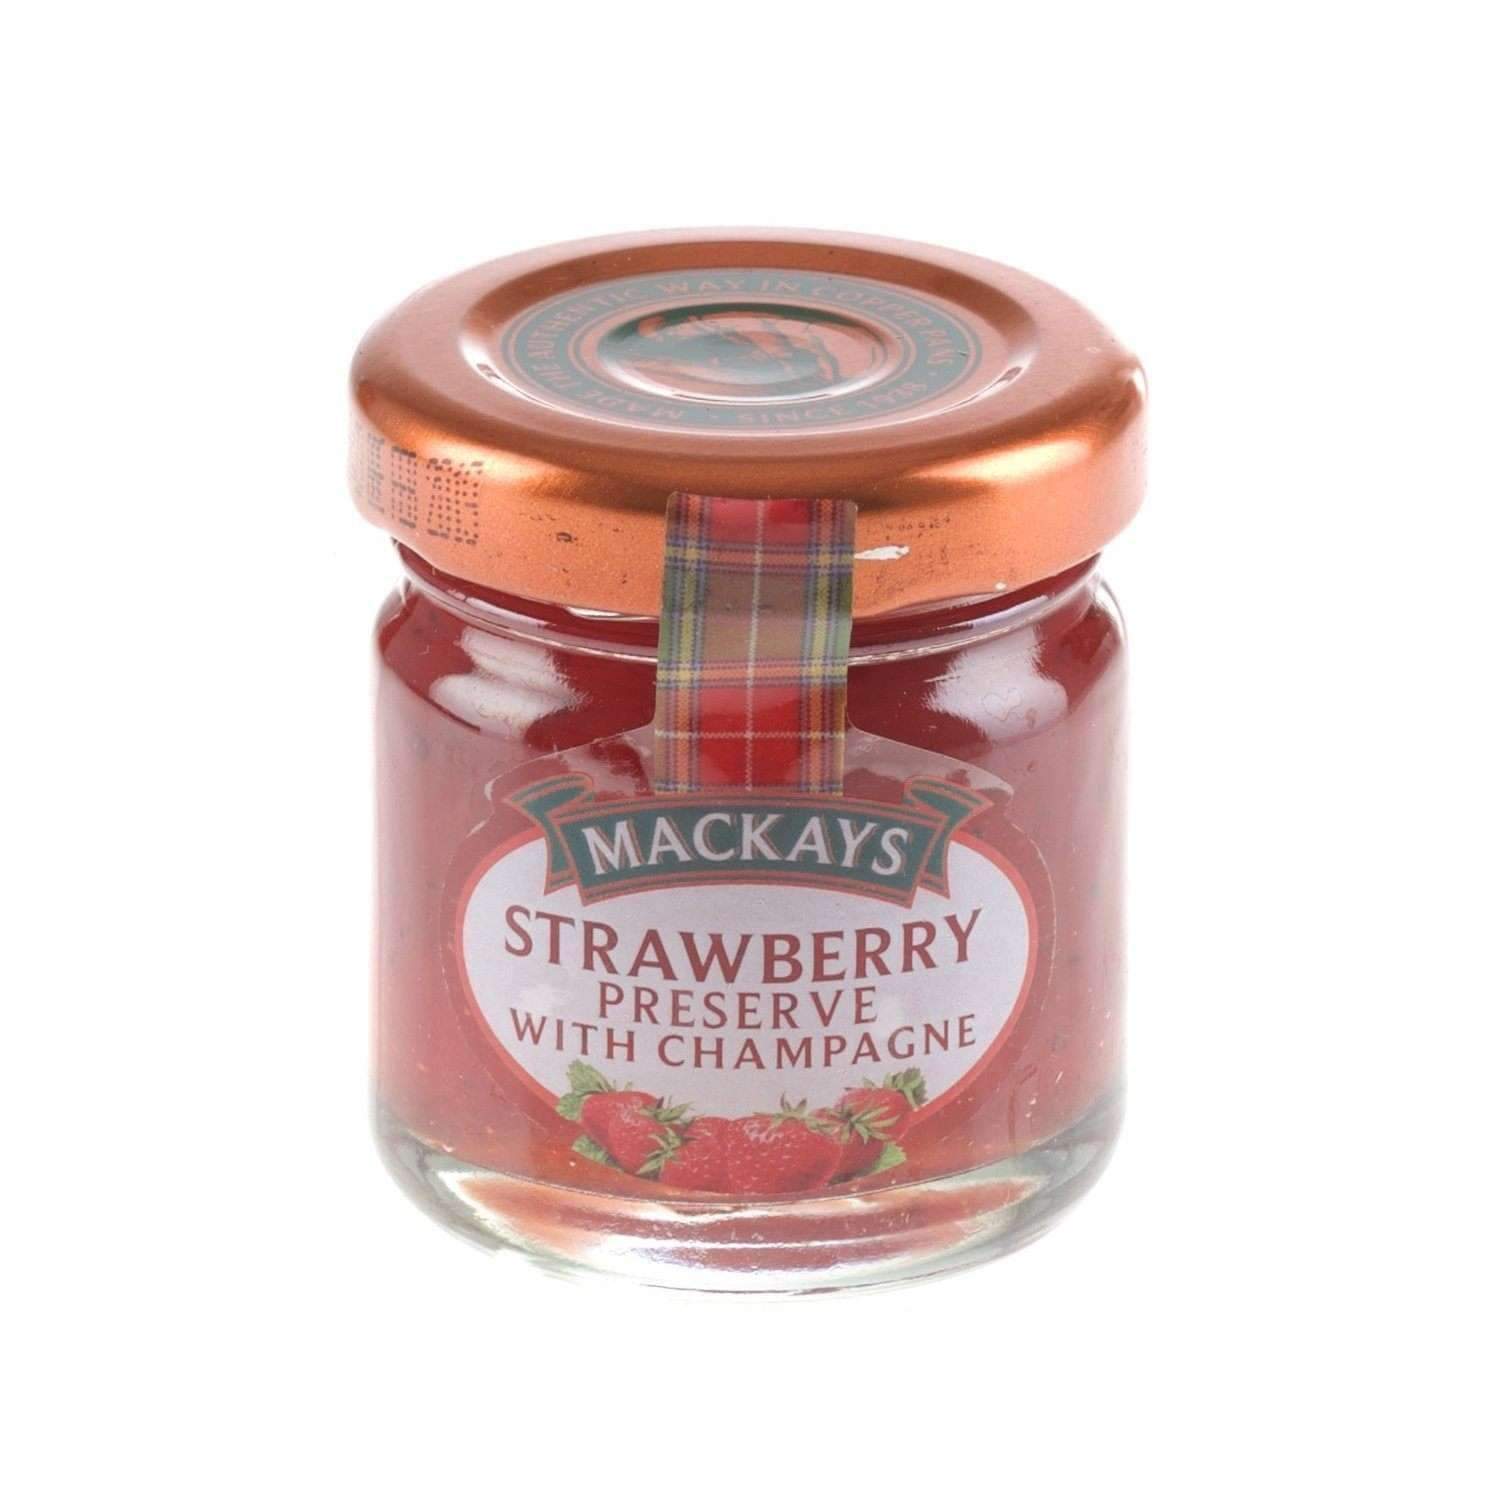  Marmelada - Scottish Strawberry Preserve with Champagne, 42g | Mackays 